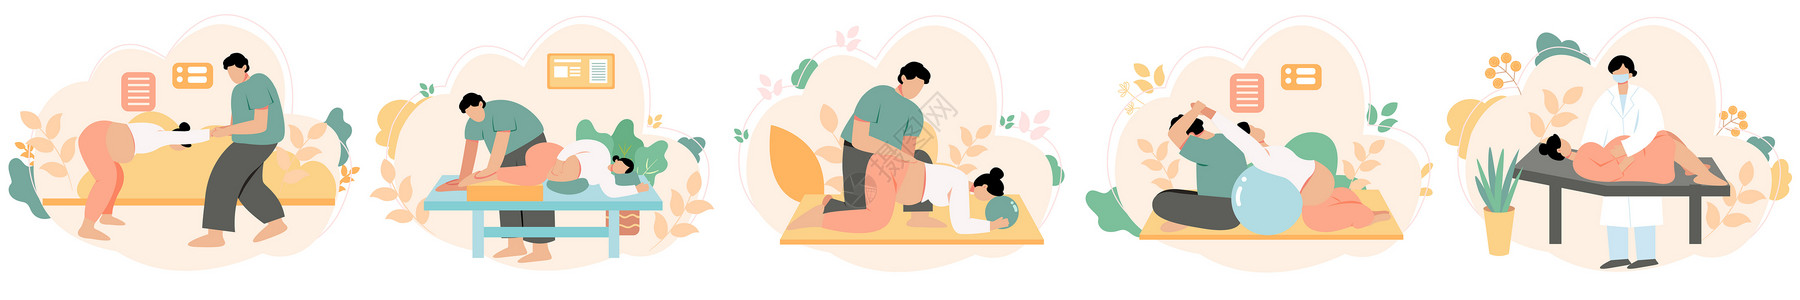 孕妇吃孕妇产前护理训练孕期锻炼svg矢量插画元素插画